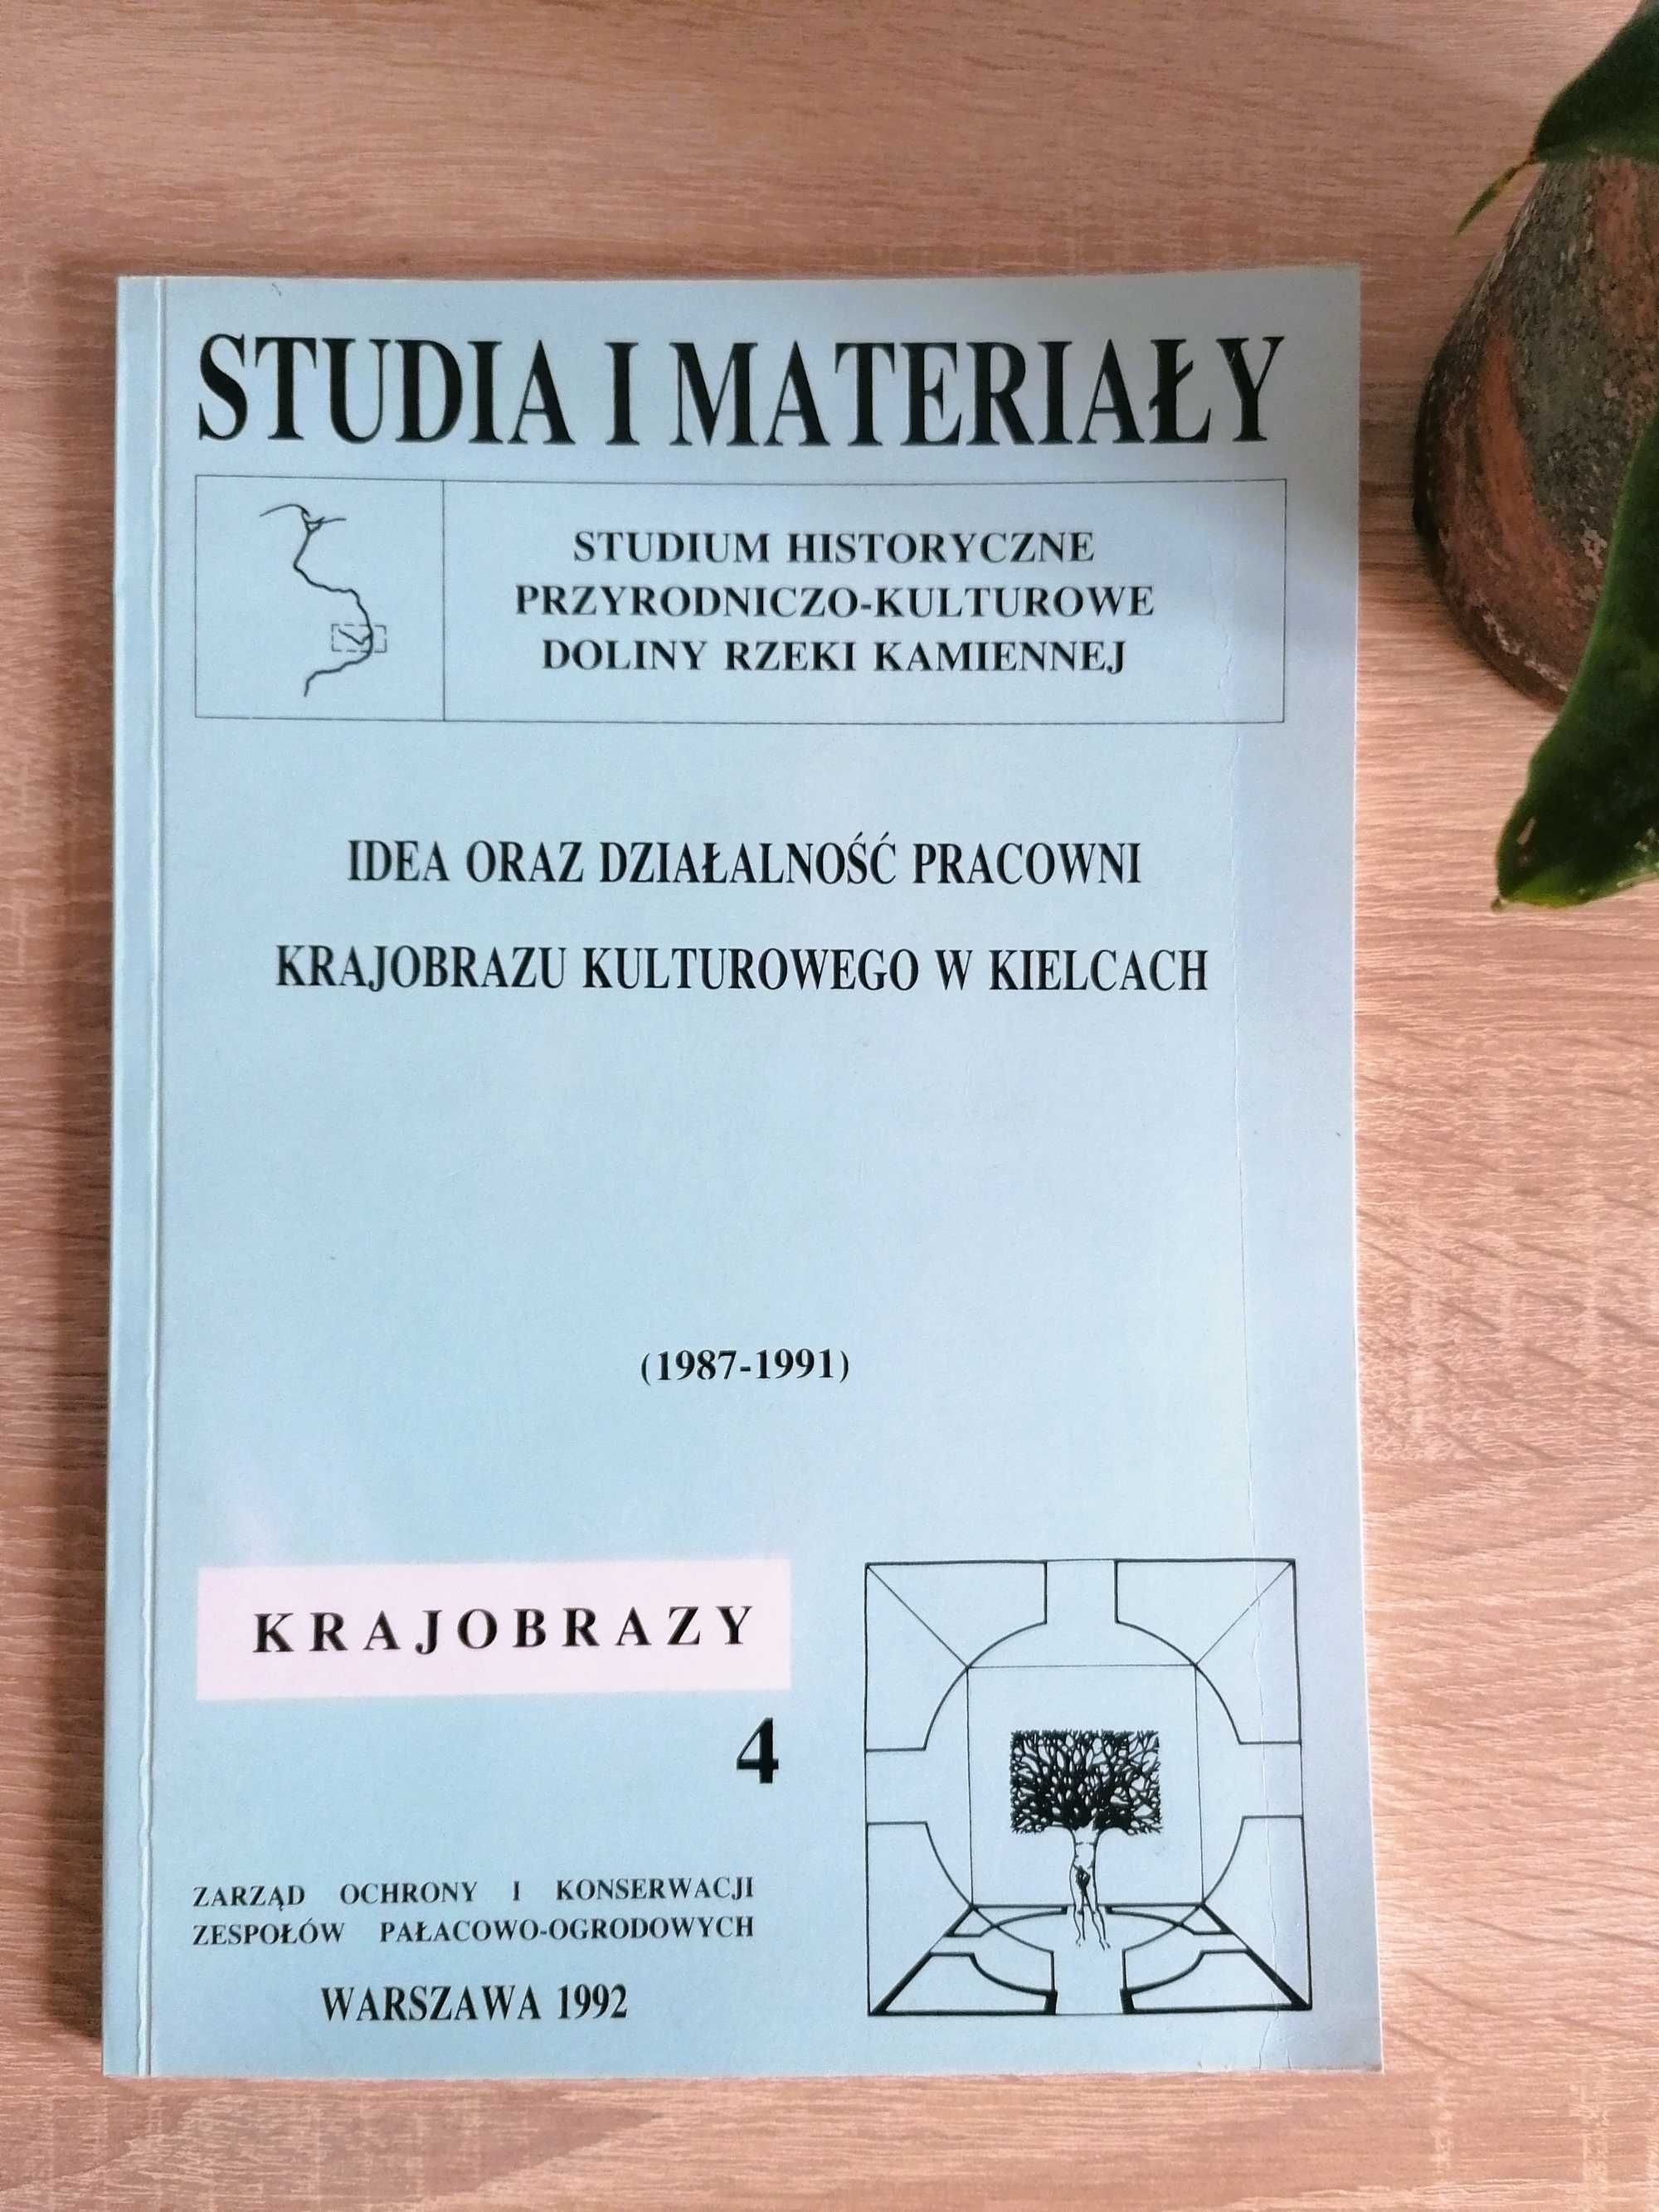 STUDIA I MATERIAŁY, K R A J O B R A Z Y  4, 1992 - rzeka Kamienna